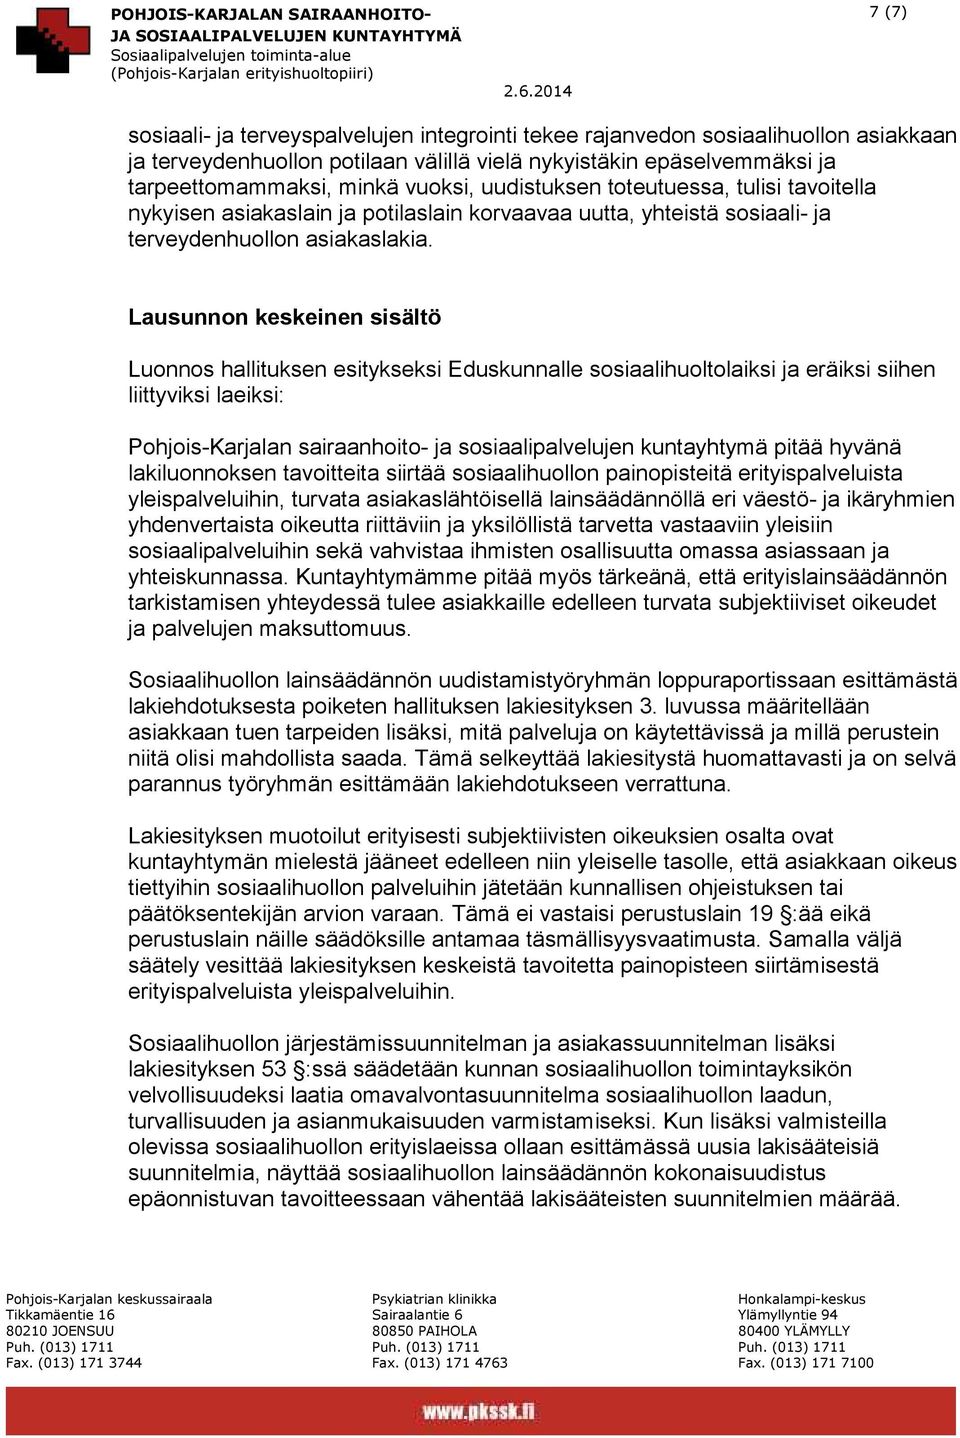 Lausunnon keskeinen sisältö Luonnos hallituksen esitykseksi Eduskunnalle sosiaalihuoltolaiksi ja eräiksi siihen liittyviksi laeiksi: Pohjois-Karjalan sairaanhoito- ja sosiaalipalvelujen kuntayhtymä